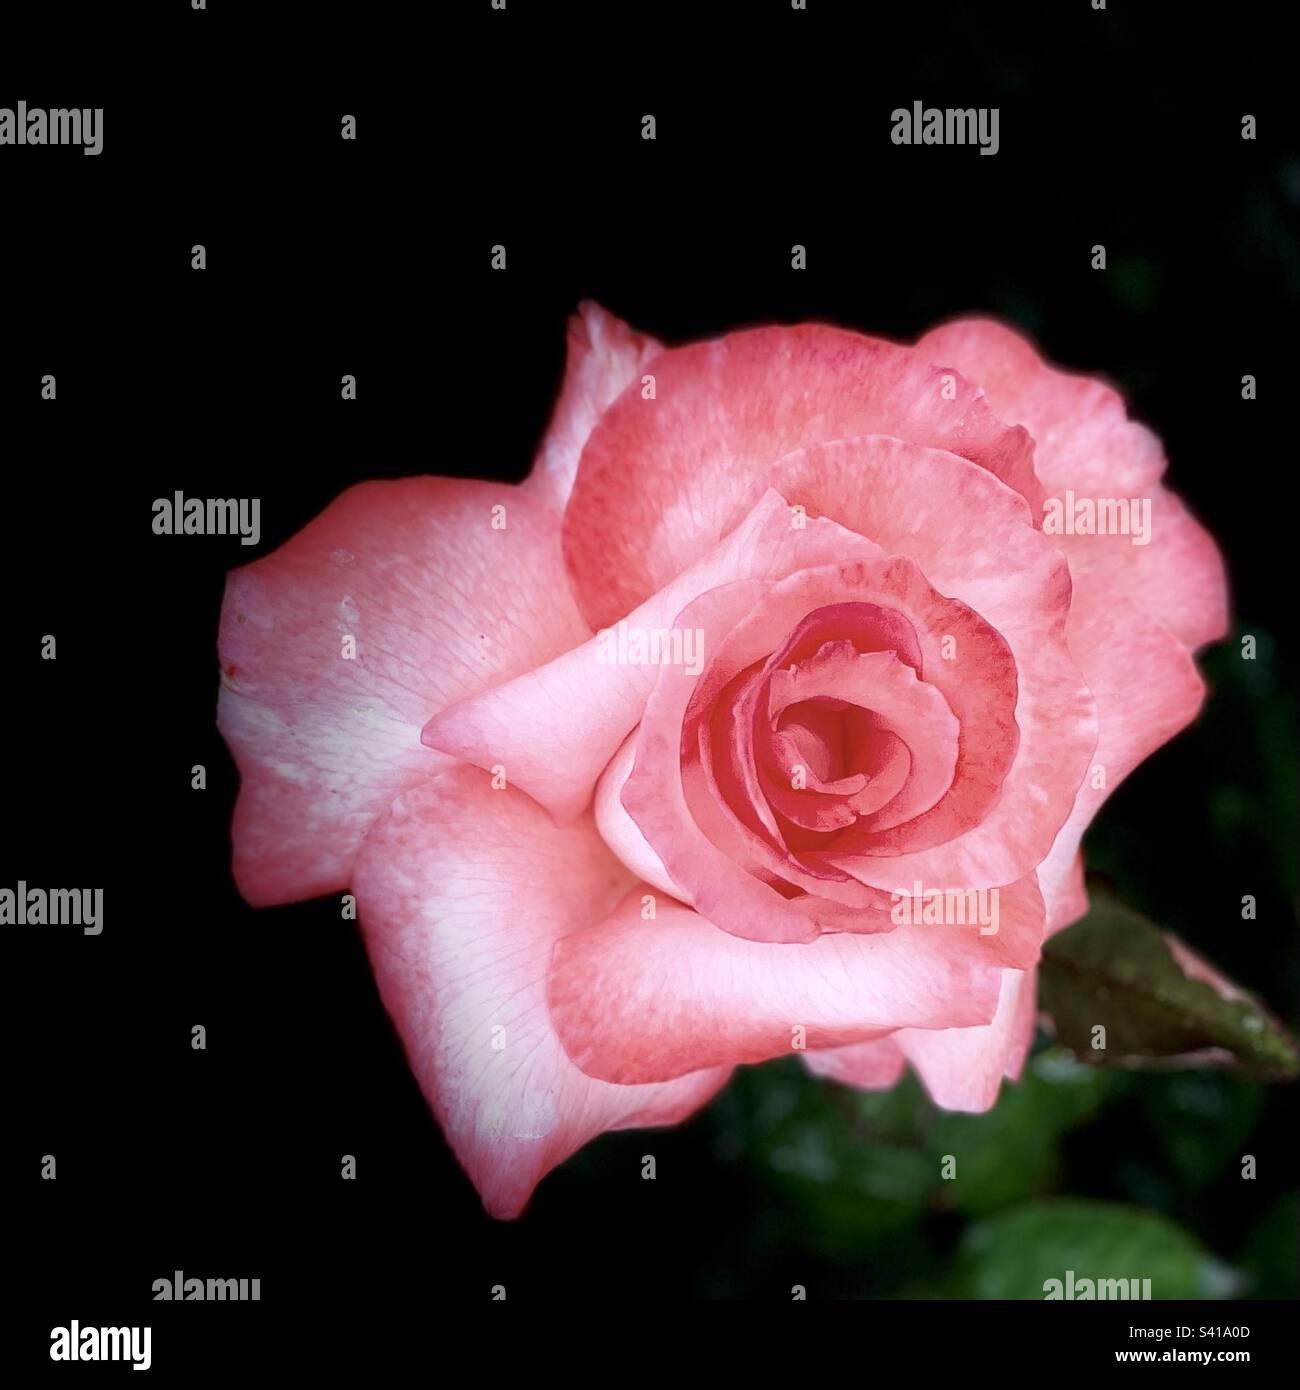 Portrait flushed pink rose, stage light, black background Stock Photo